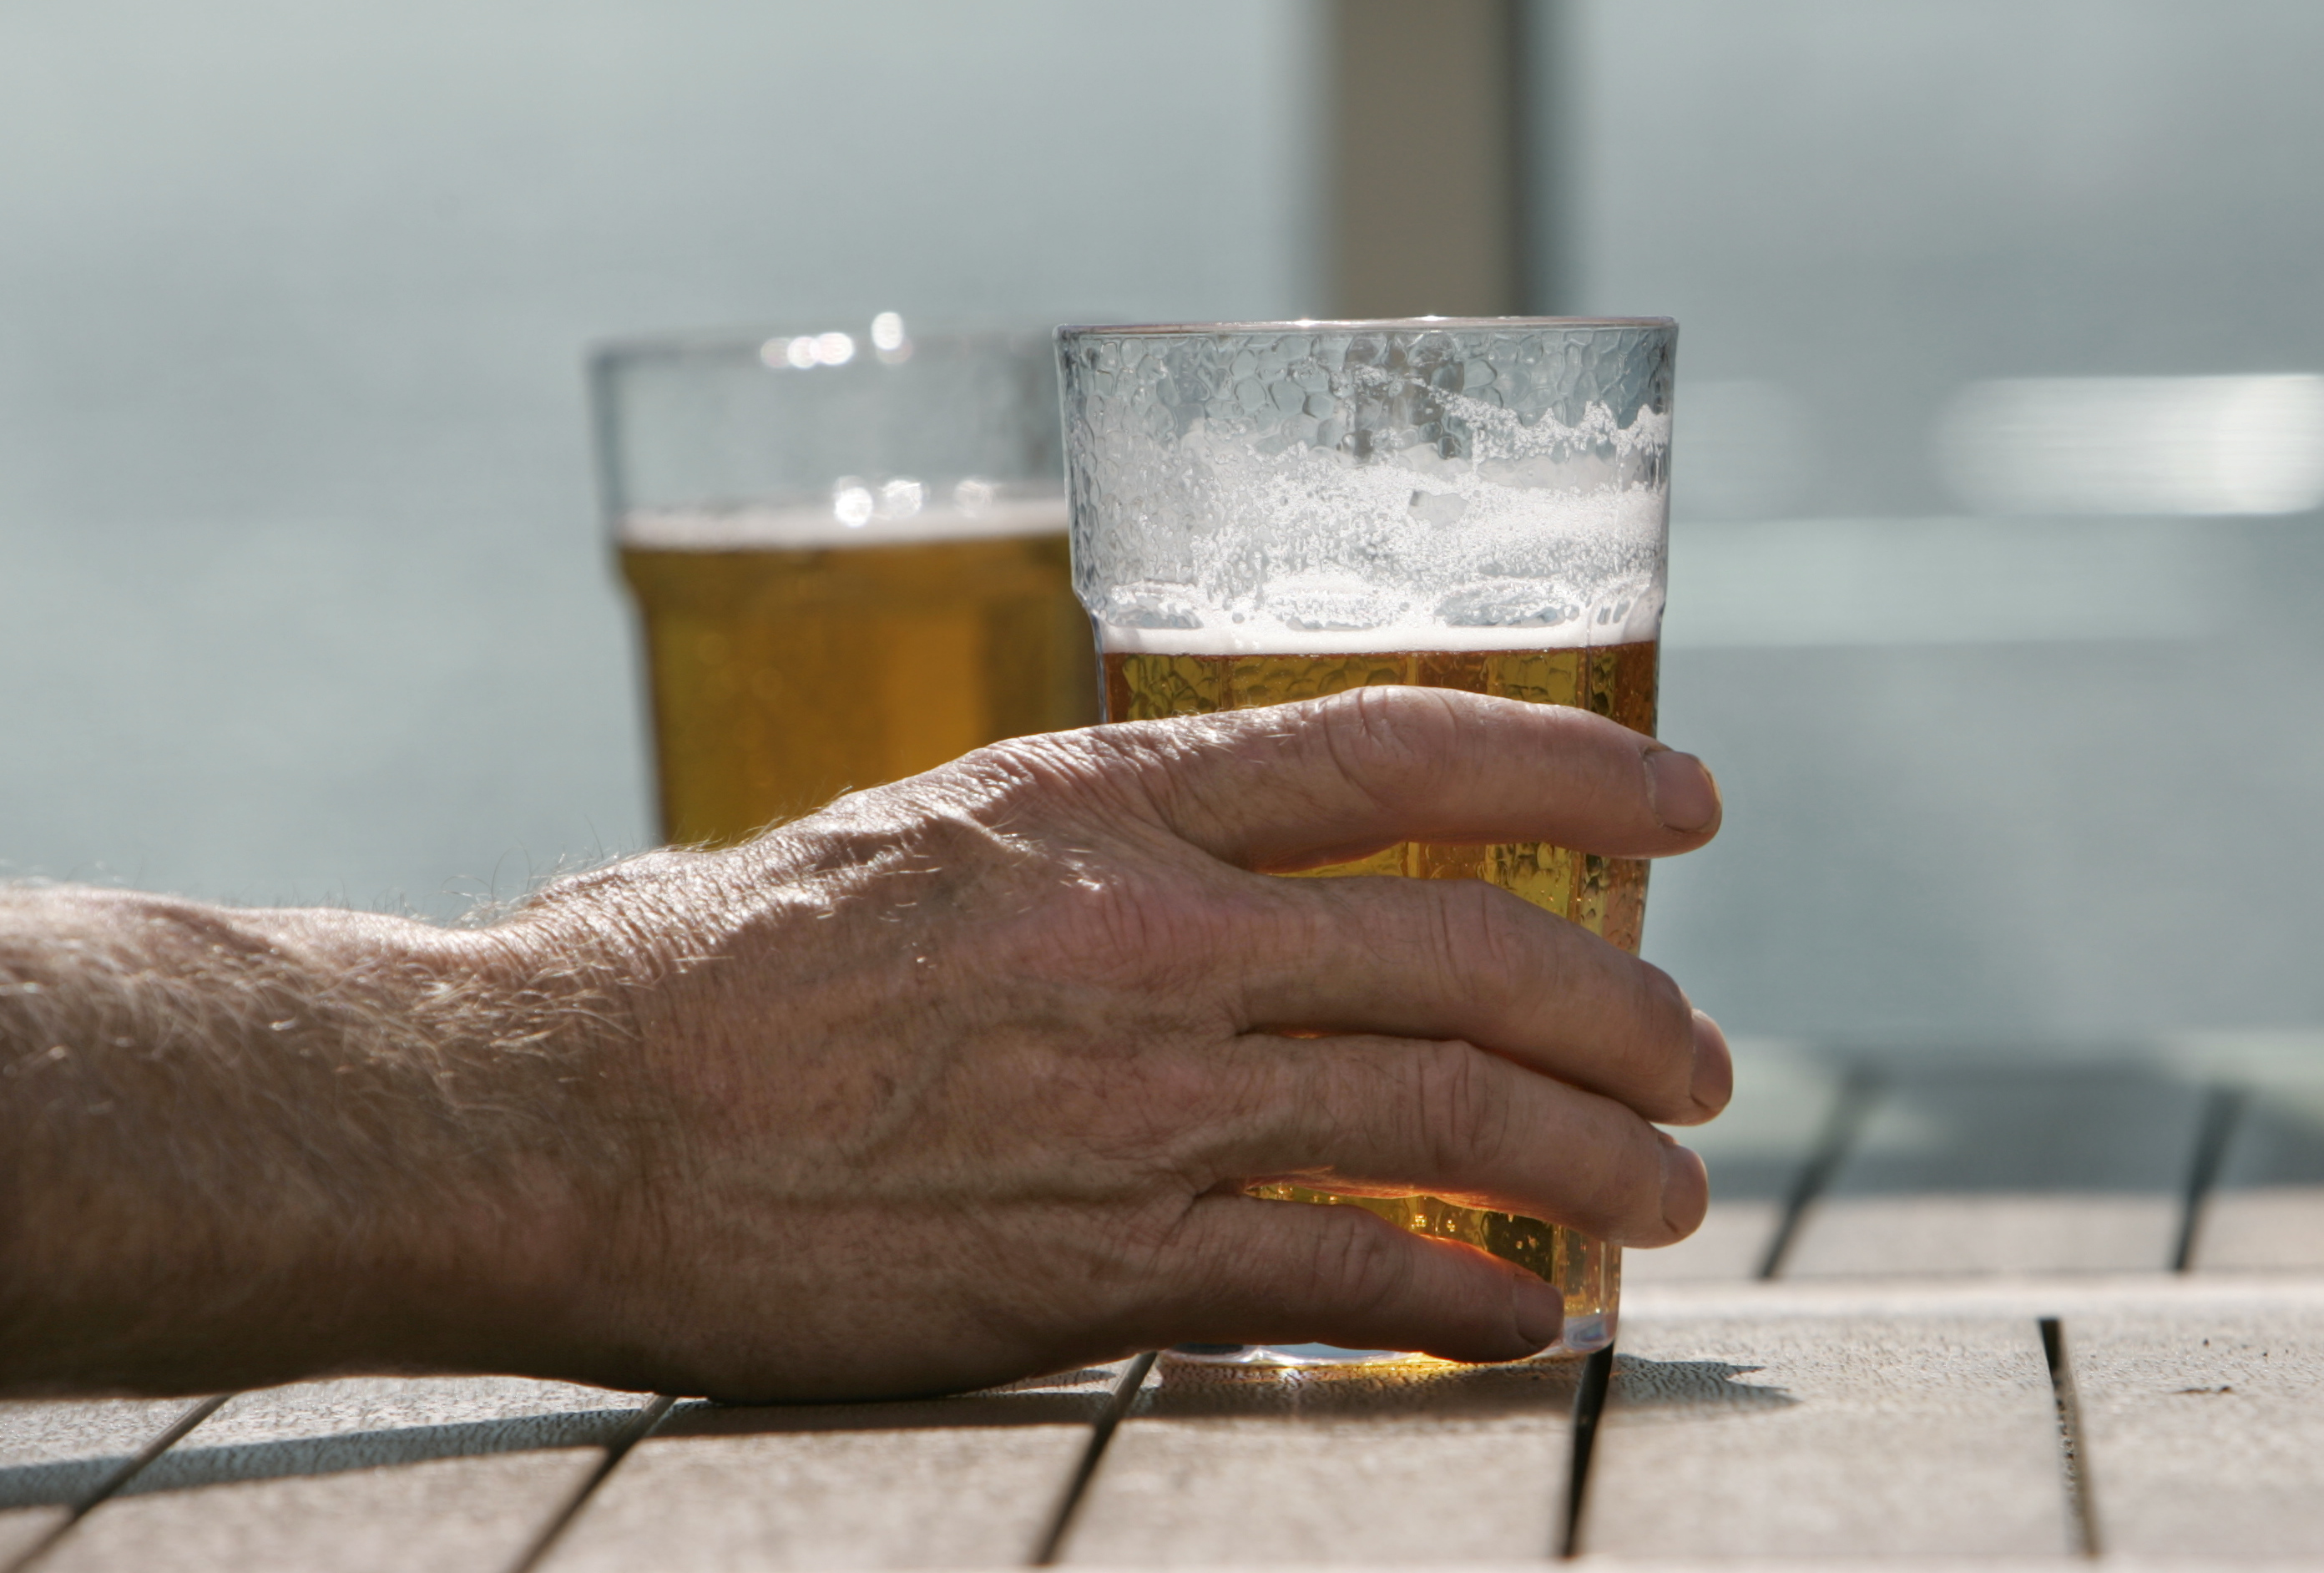 63-åringen uppges ha druckit flera öl innan den påstådda olyckan inträffade.